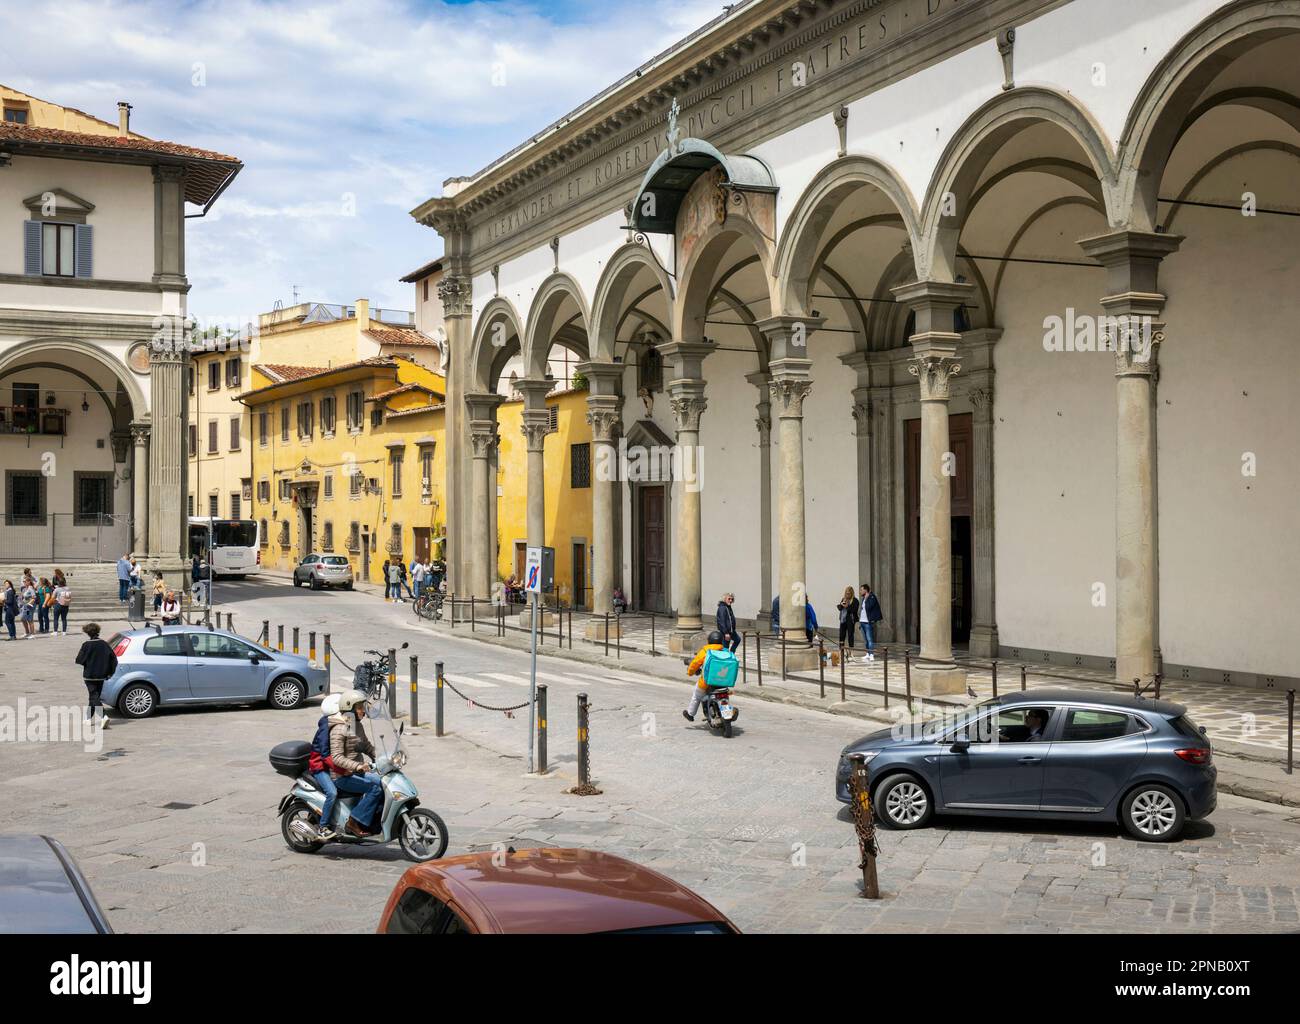 La vie quotidienne sur la Piazza della Santissima Annunziata. Florence, Toscane, Italie. Le centre historique de Florence est classé au patrimoine mondial de l'UNESCO Banque D'Images